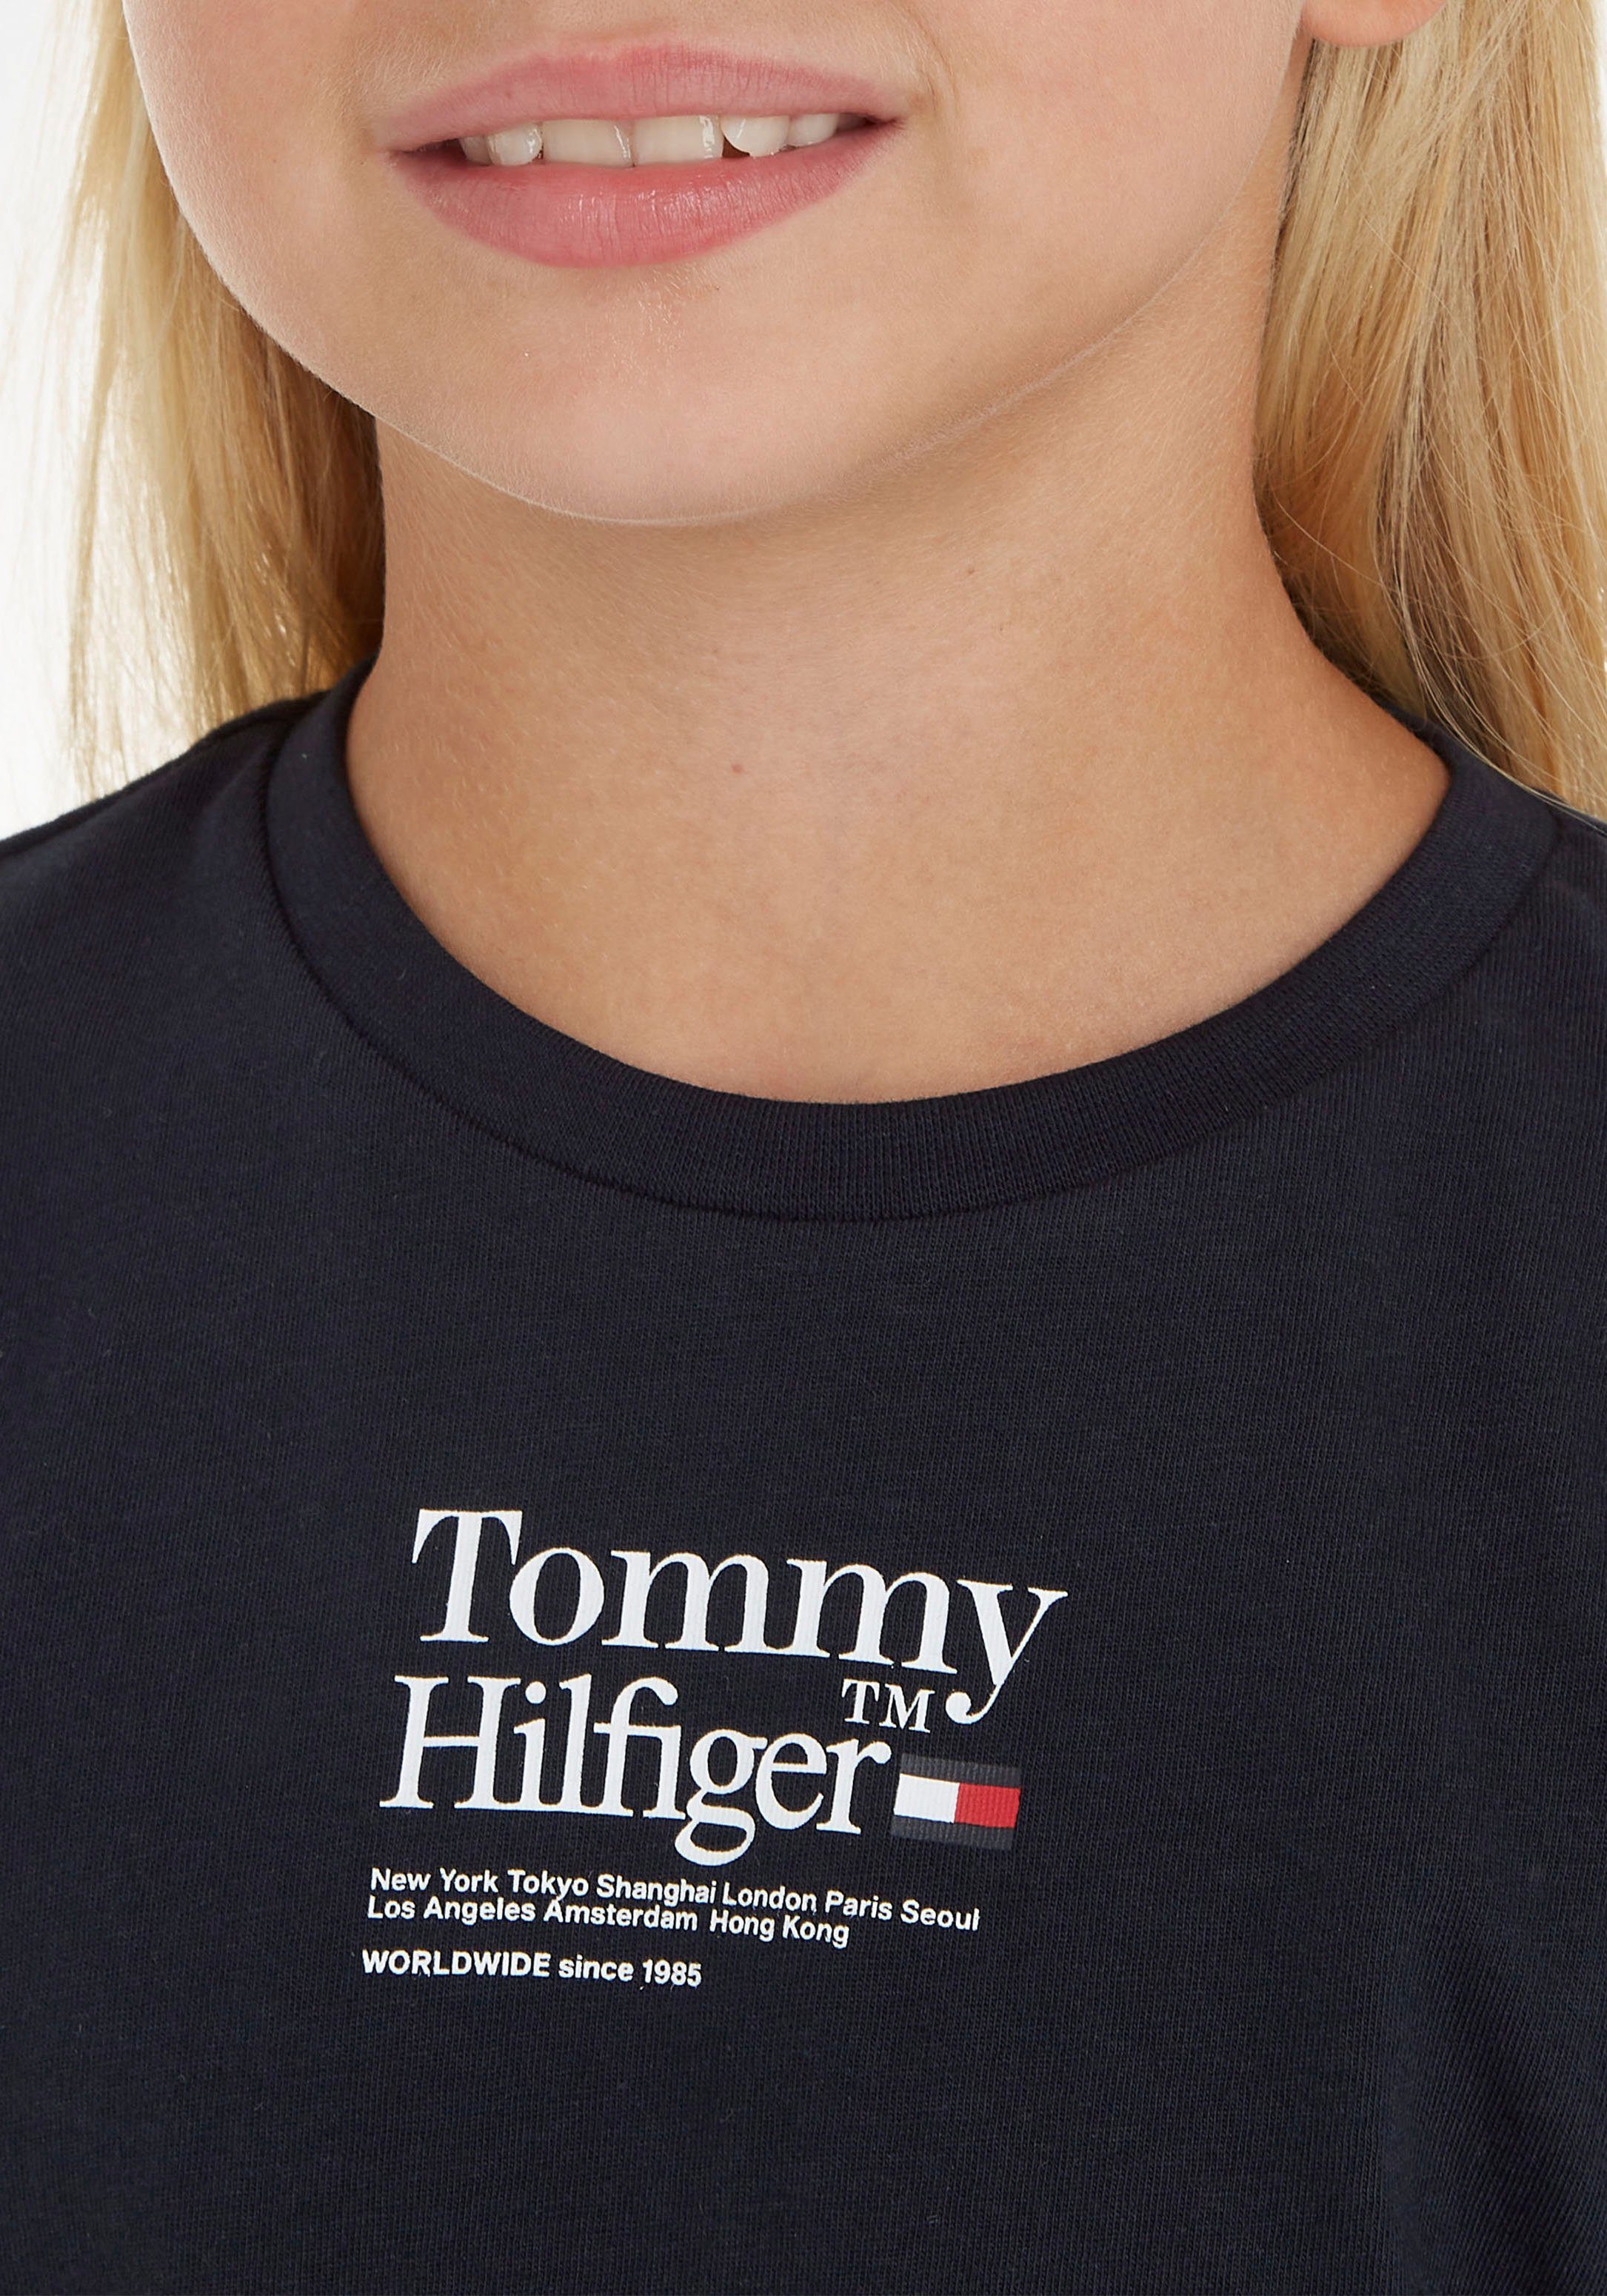 T-Shirt Hilfiger S/S Tommy mit TEE TOMMY TIMELESS kurzen Ärmeln